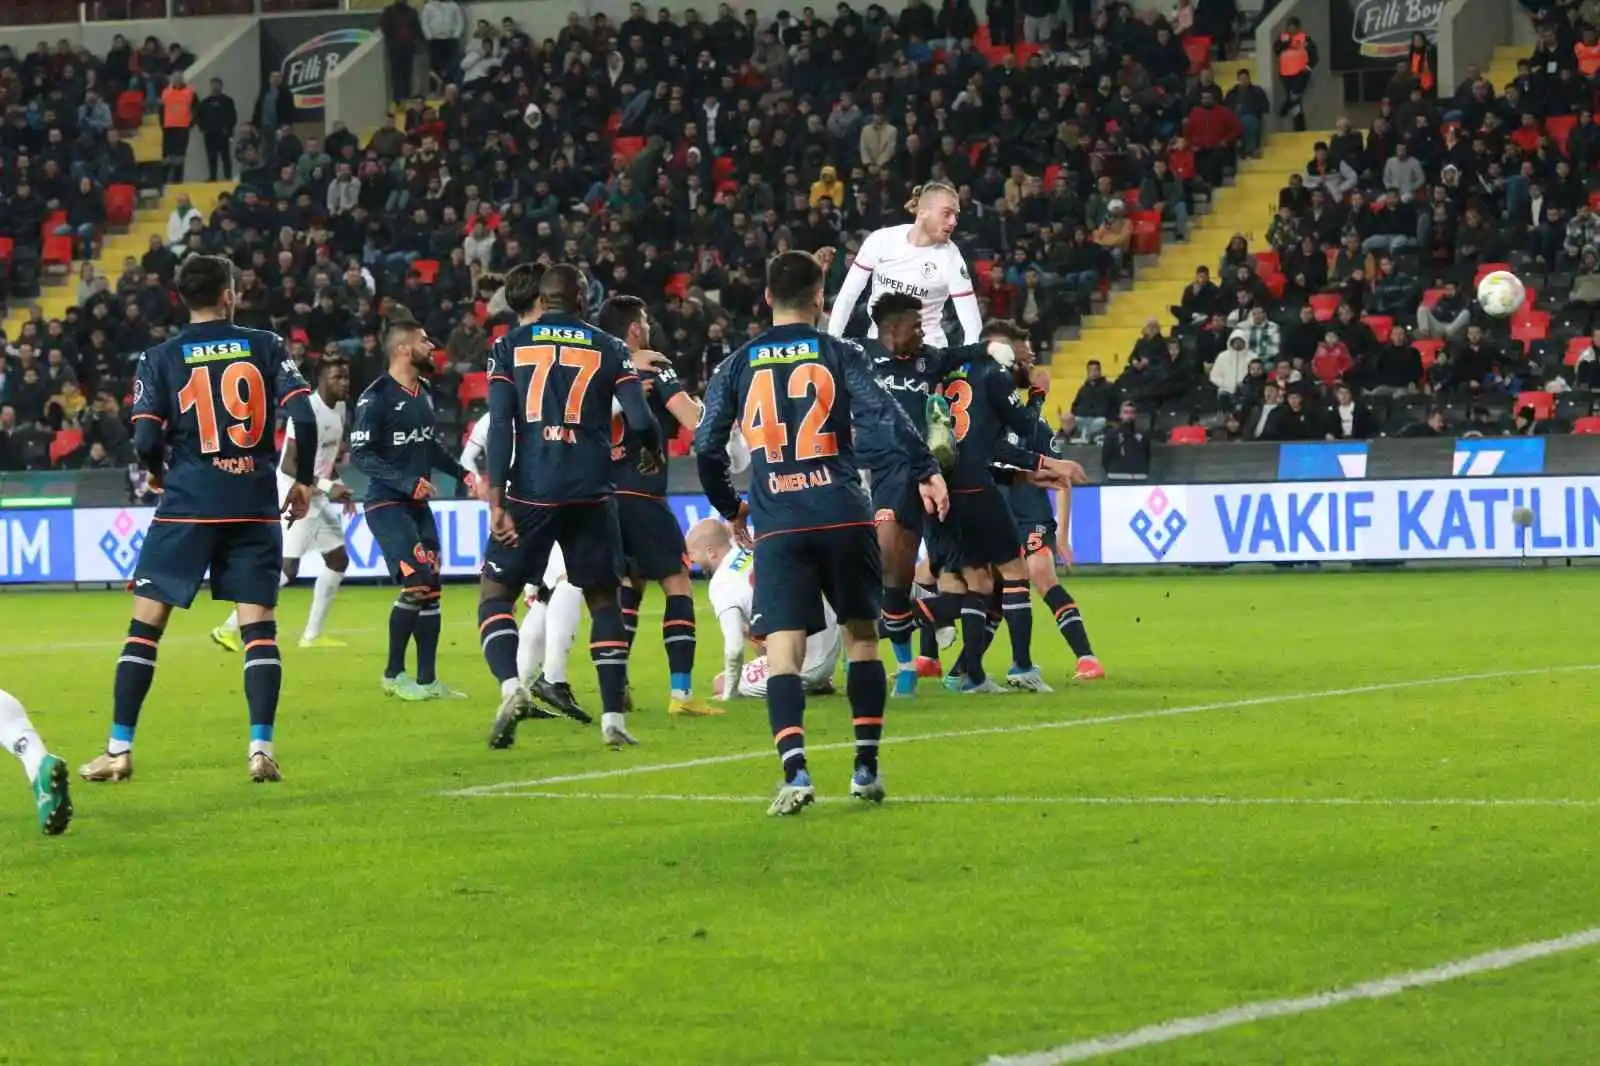 Spor Toto Süper Lig: Gaziantep FK: 1 - Başakşehir: 1 (Maç Sonucu)
